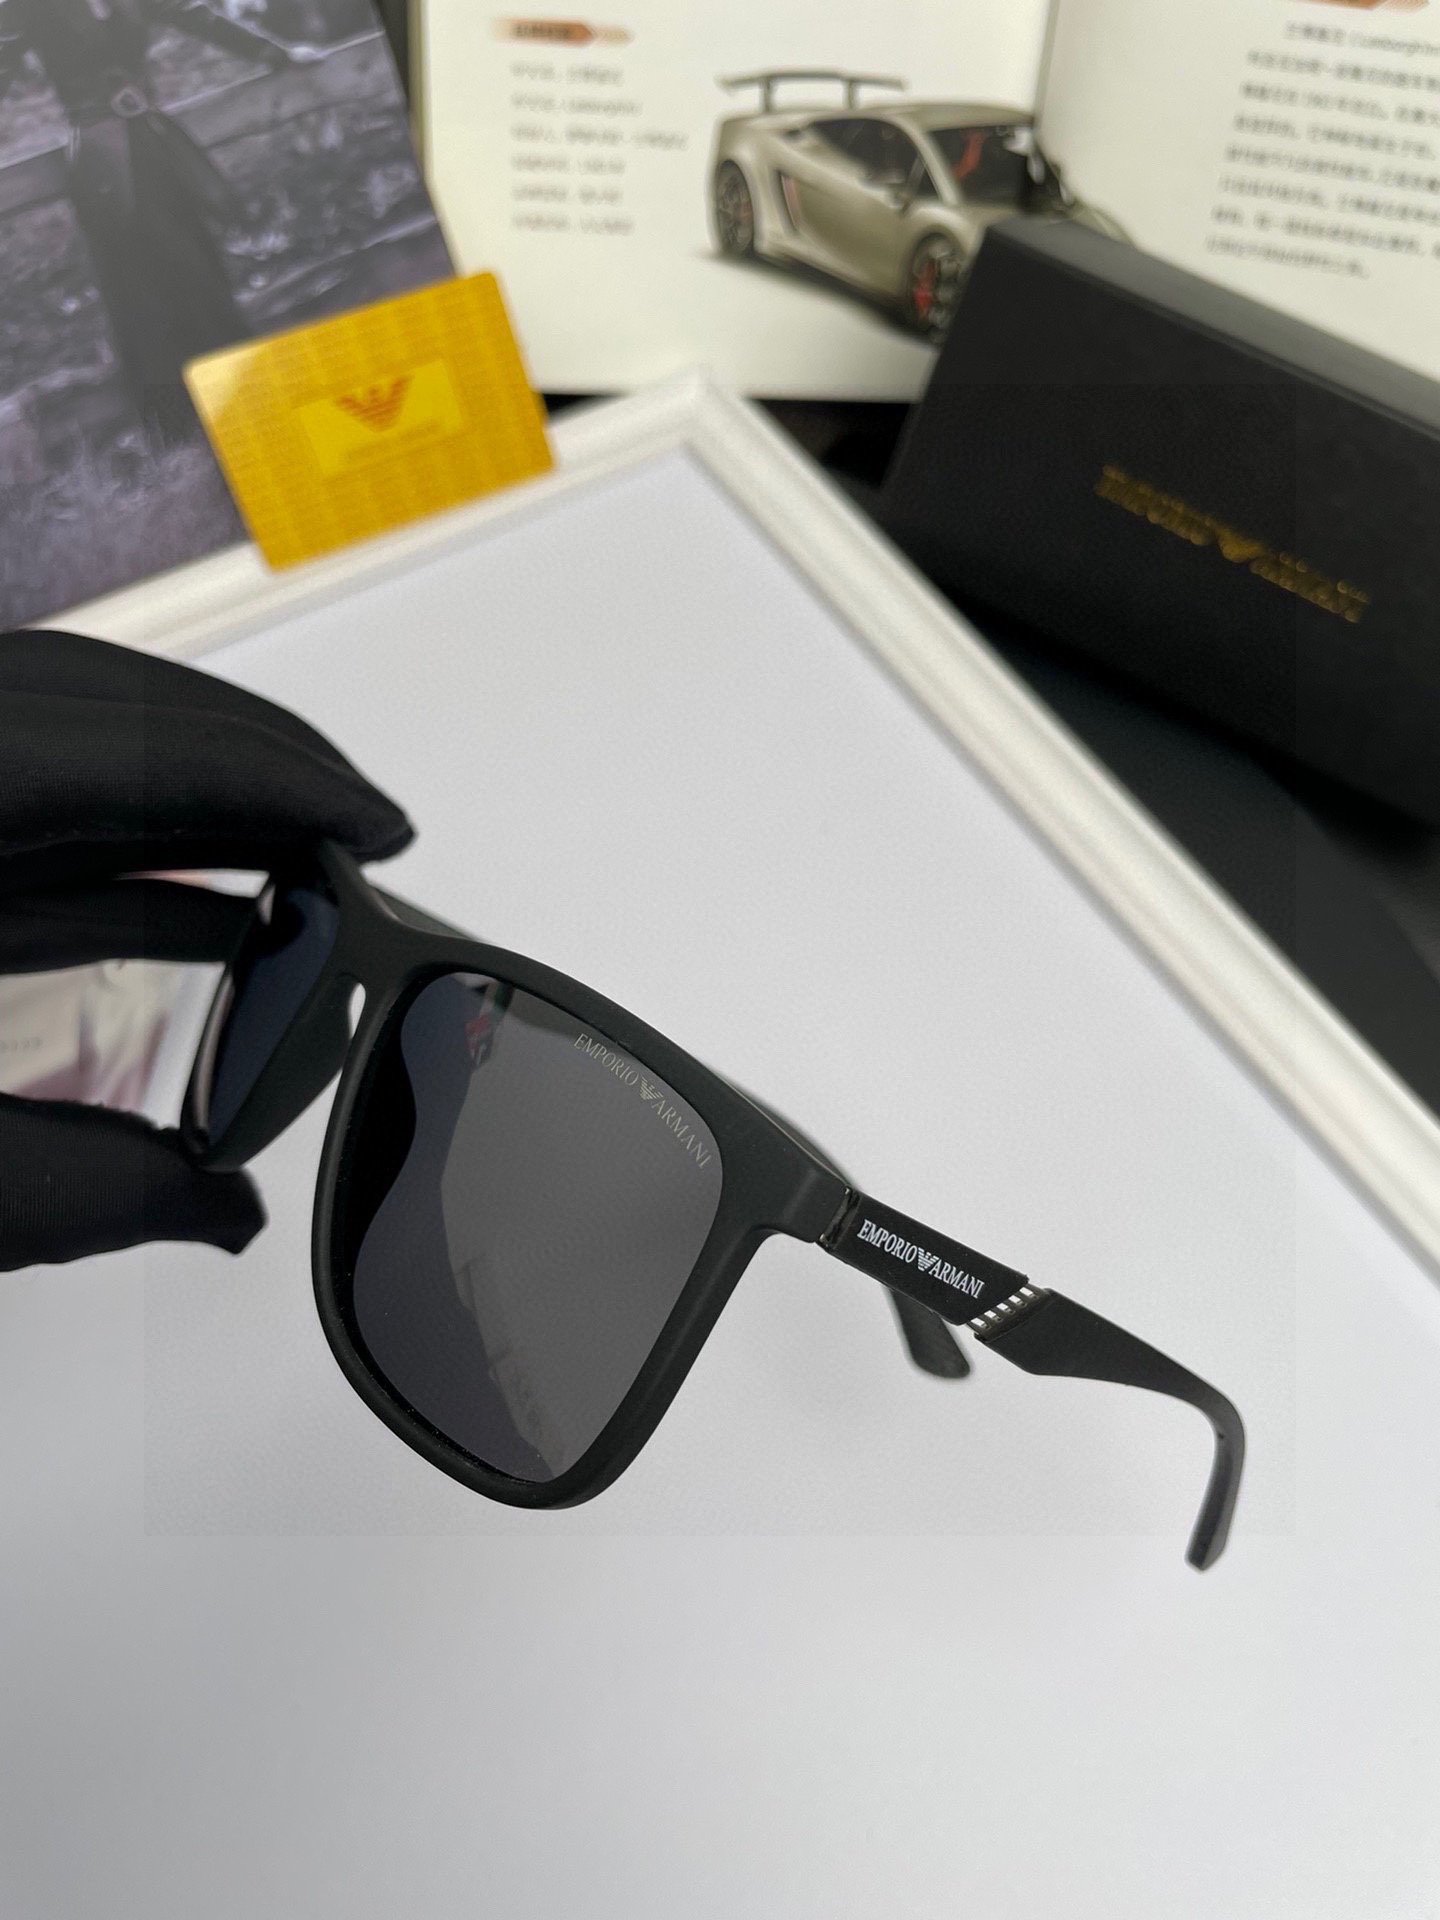 新款品牌阿玛尼ARMANI原单品质男士偏光太阳镜️材质高清宝丽来偏光镜片板材印字logo镜腿看细节就知道